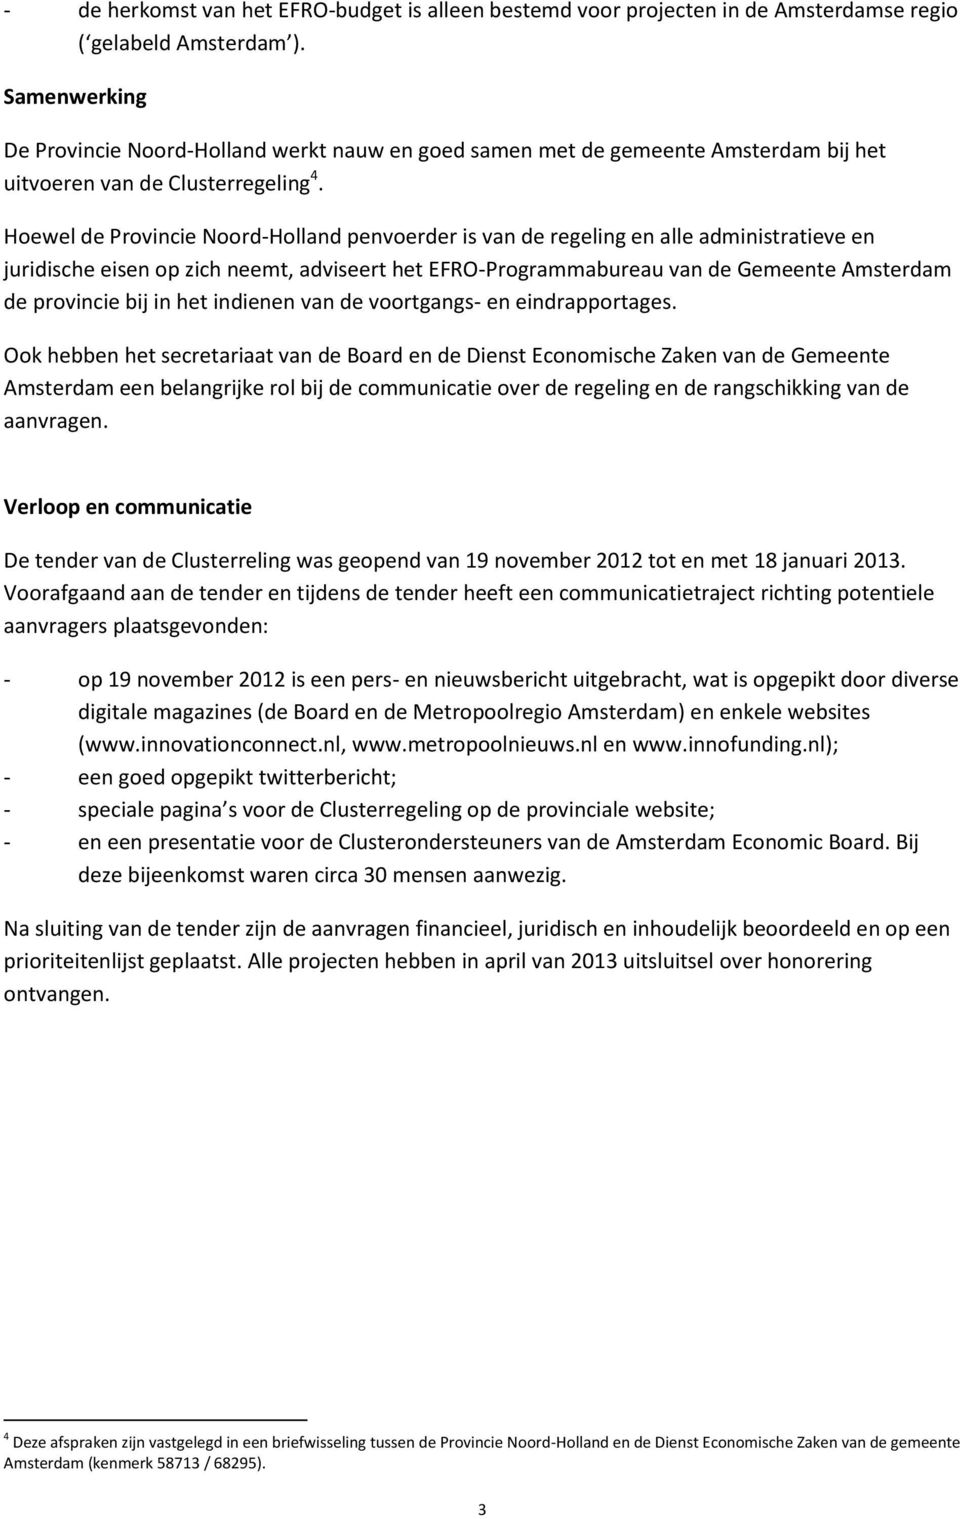 Hoewel de Provincie Noord-Holland penvoerder is van de regeling en alle administratieve en juridische eisen op zich neemt, adviseert het EFRO-Programmabureau van de Gemeente Amsterdam de provincie